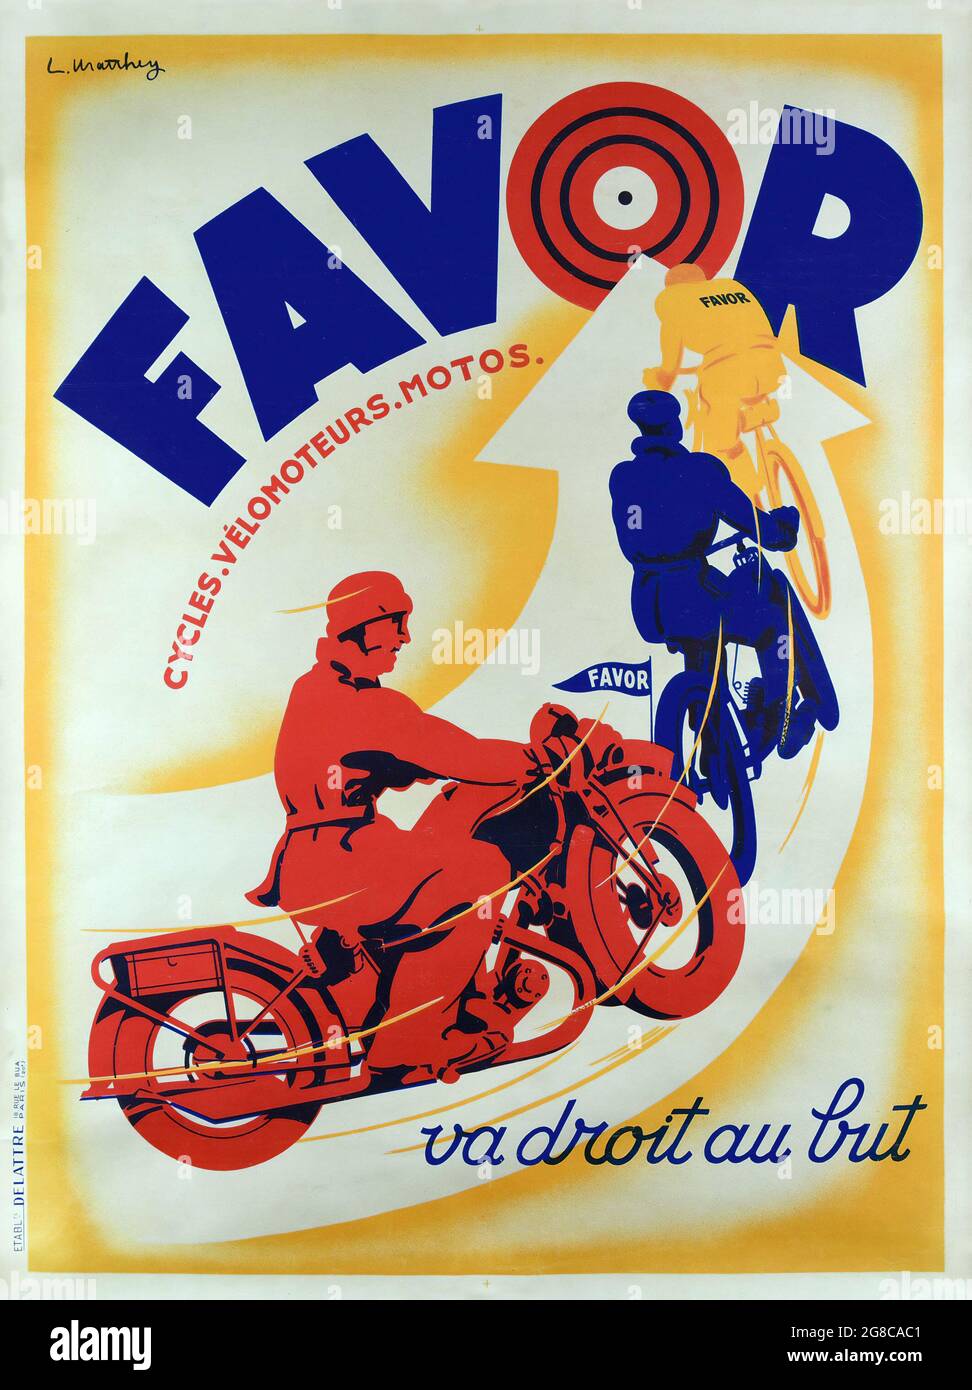 affiche-art-deco-vintage-faveur-des-motos-et-des-cycles-france-oeuvres-de-claude-lotte-matthey-va-droit-au-mais-annees-1930-2g8cac1.jpg